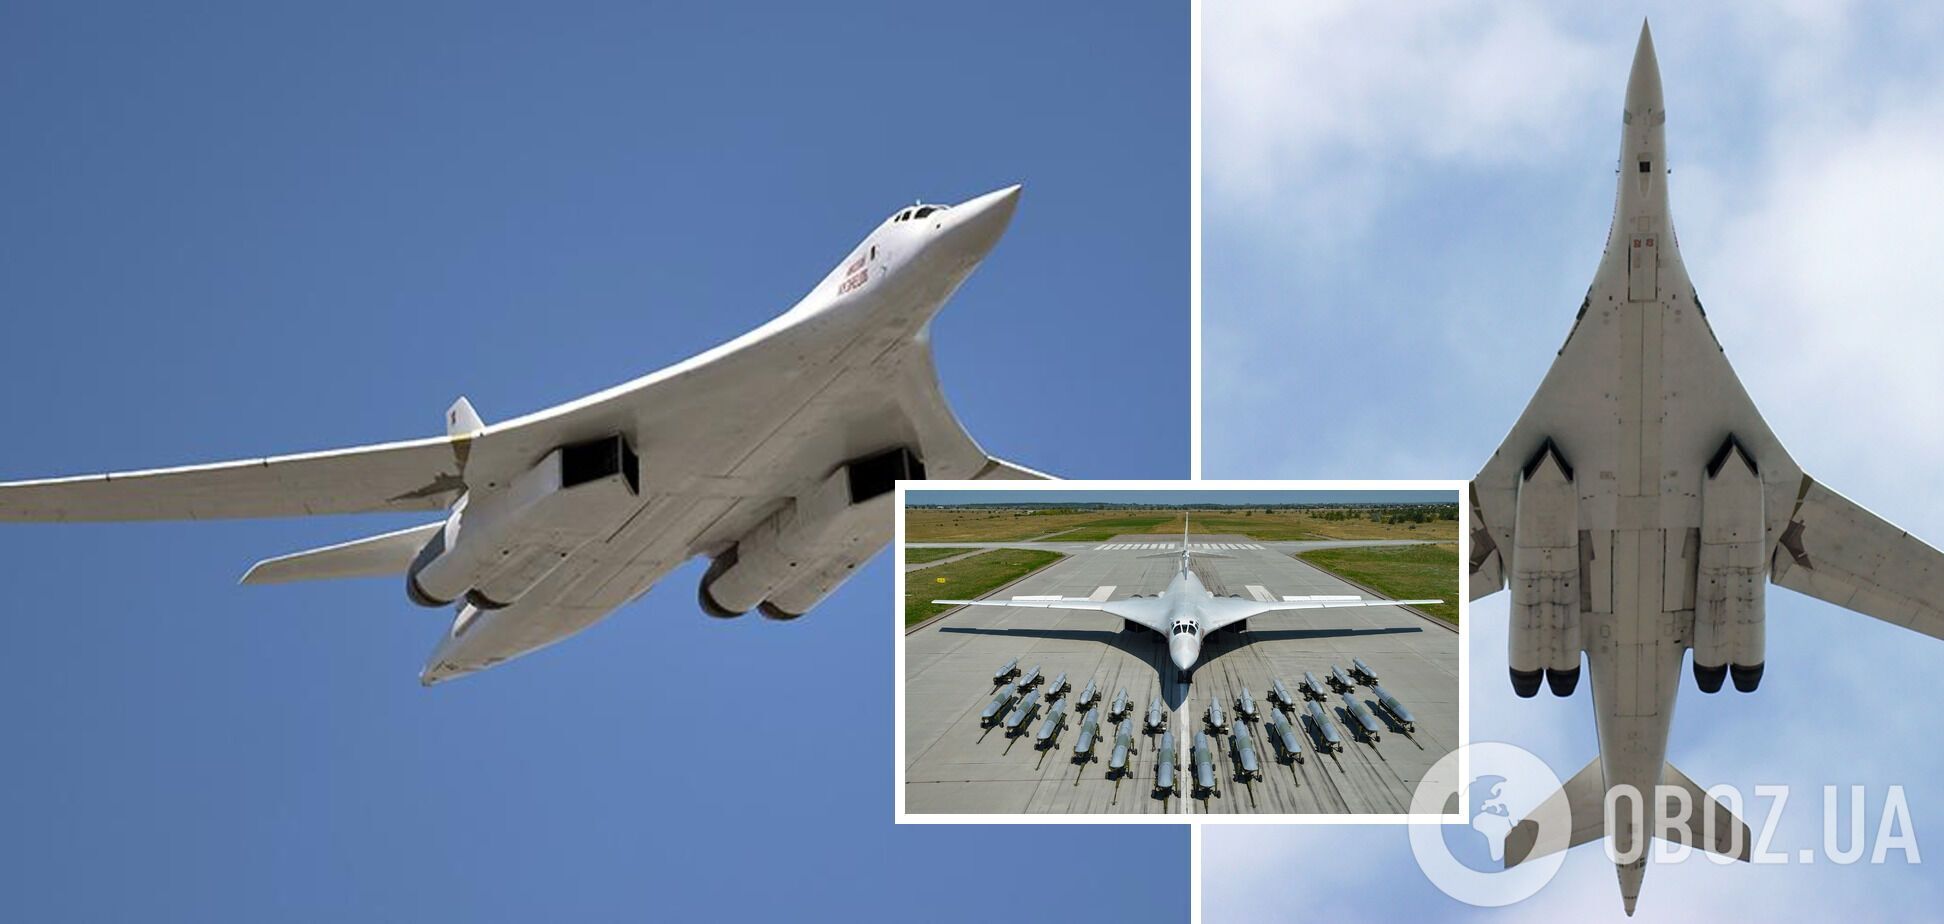 Російський інженер, який розробляв бомбардувальник Ту-160, попросив притулку в США в обмін на військові секрети – ЗМІ